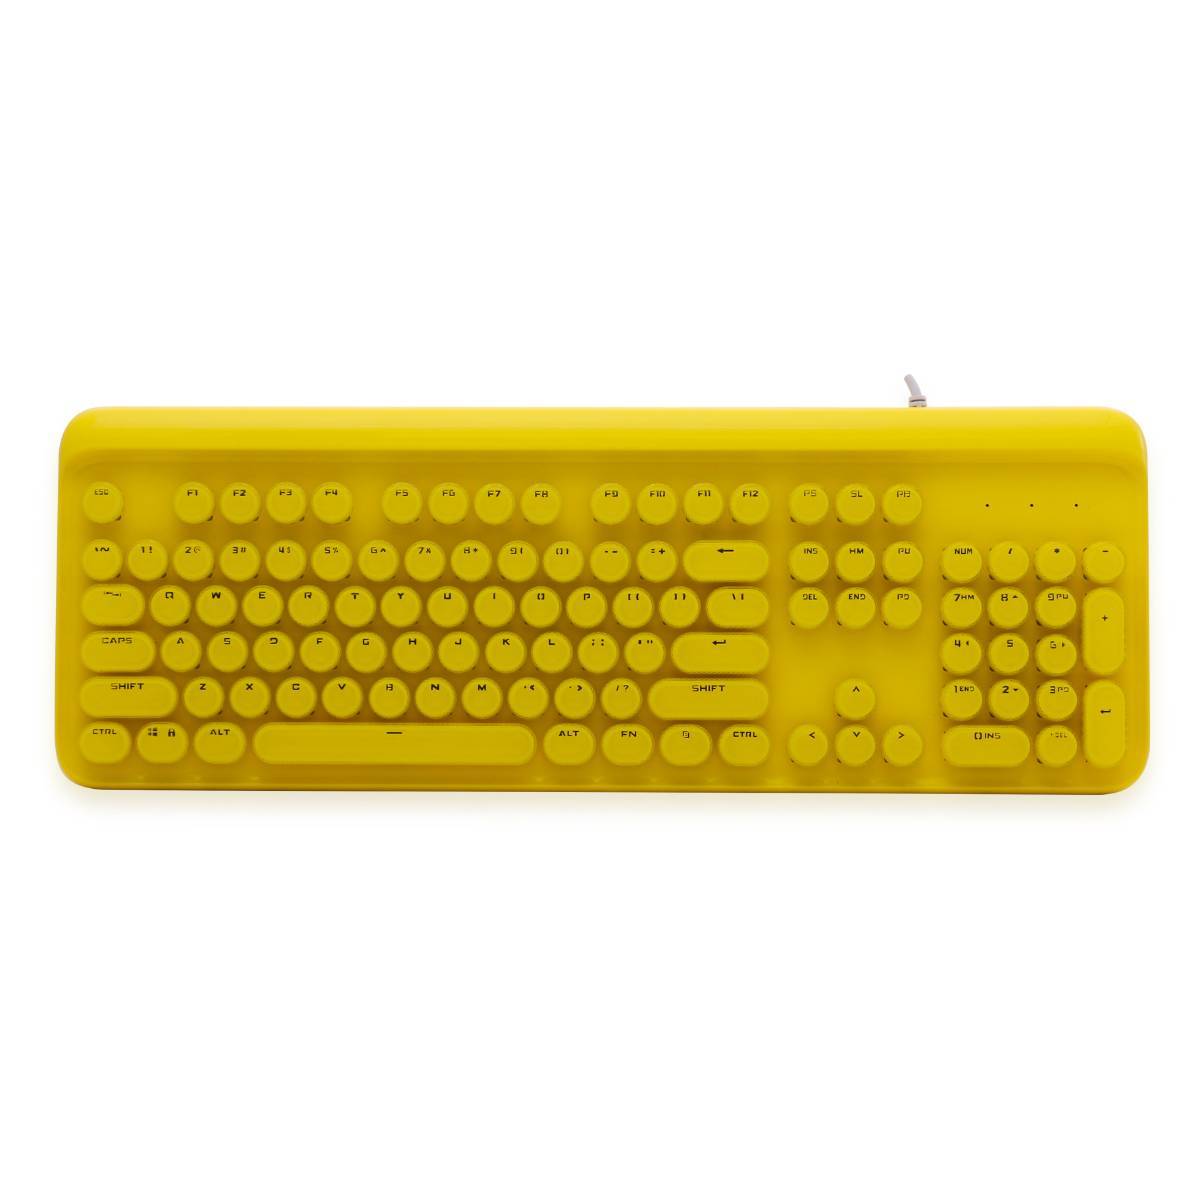 104键圆形水晶键帽彩色混光机械键盘